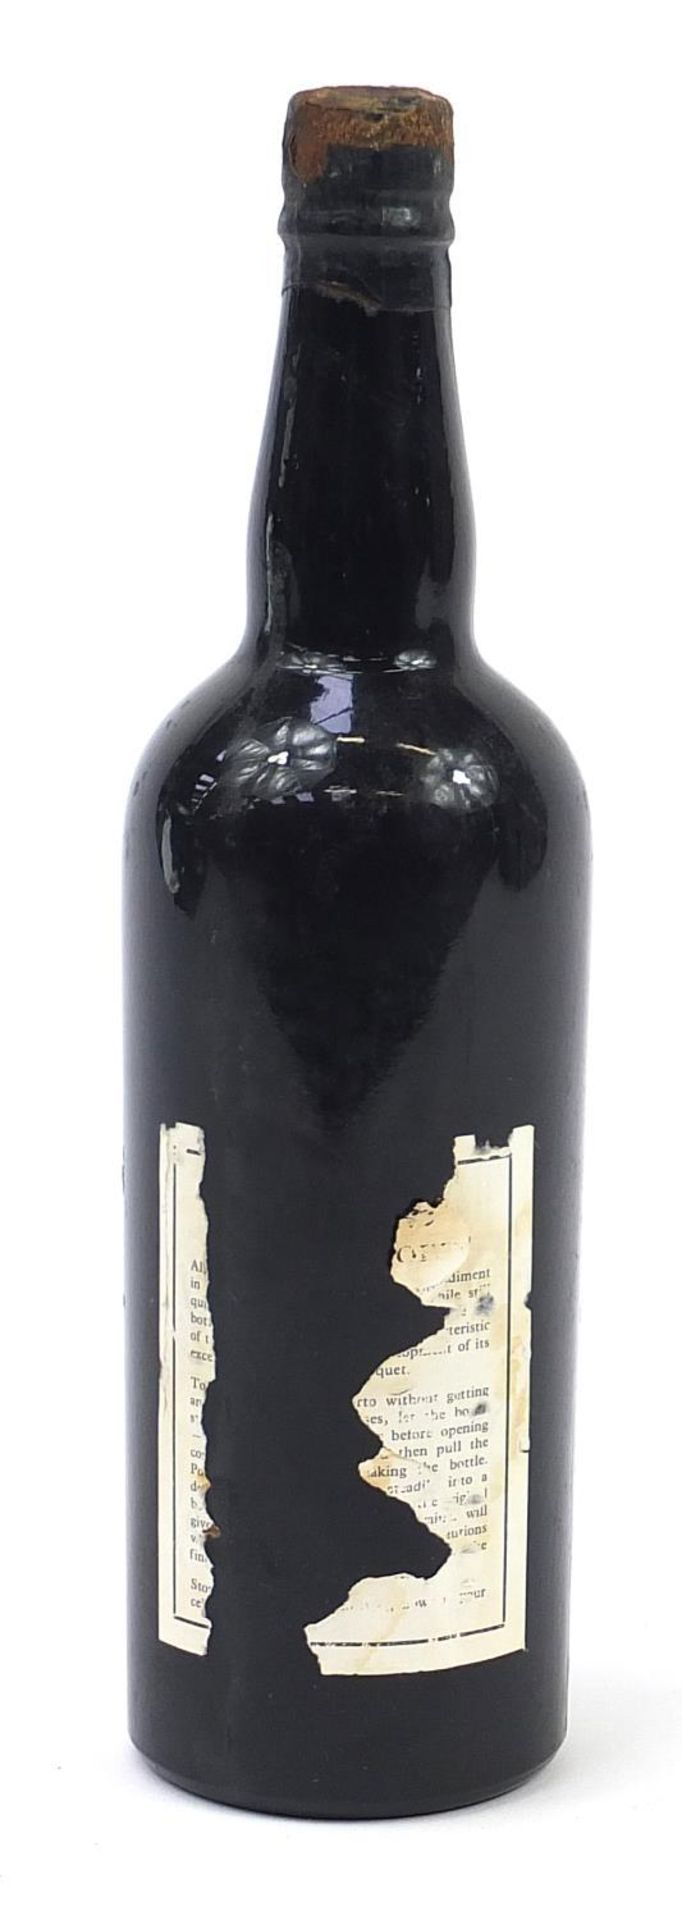 Bottle of 1962 Dow's Late Bottled Vintage Port - Image 2 of 2